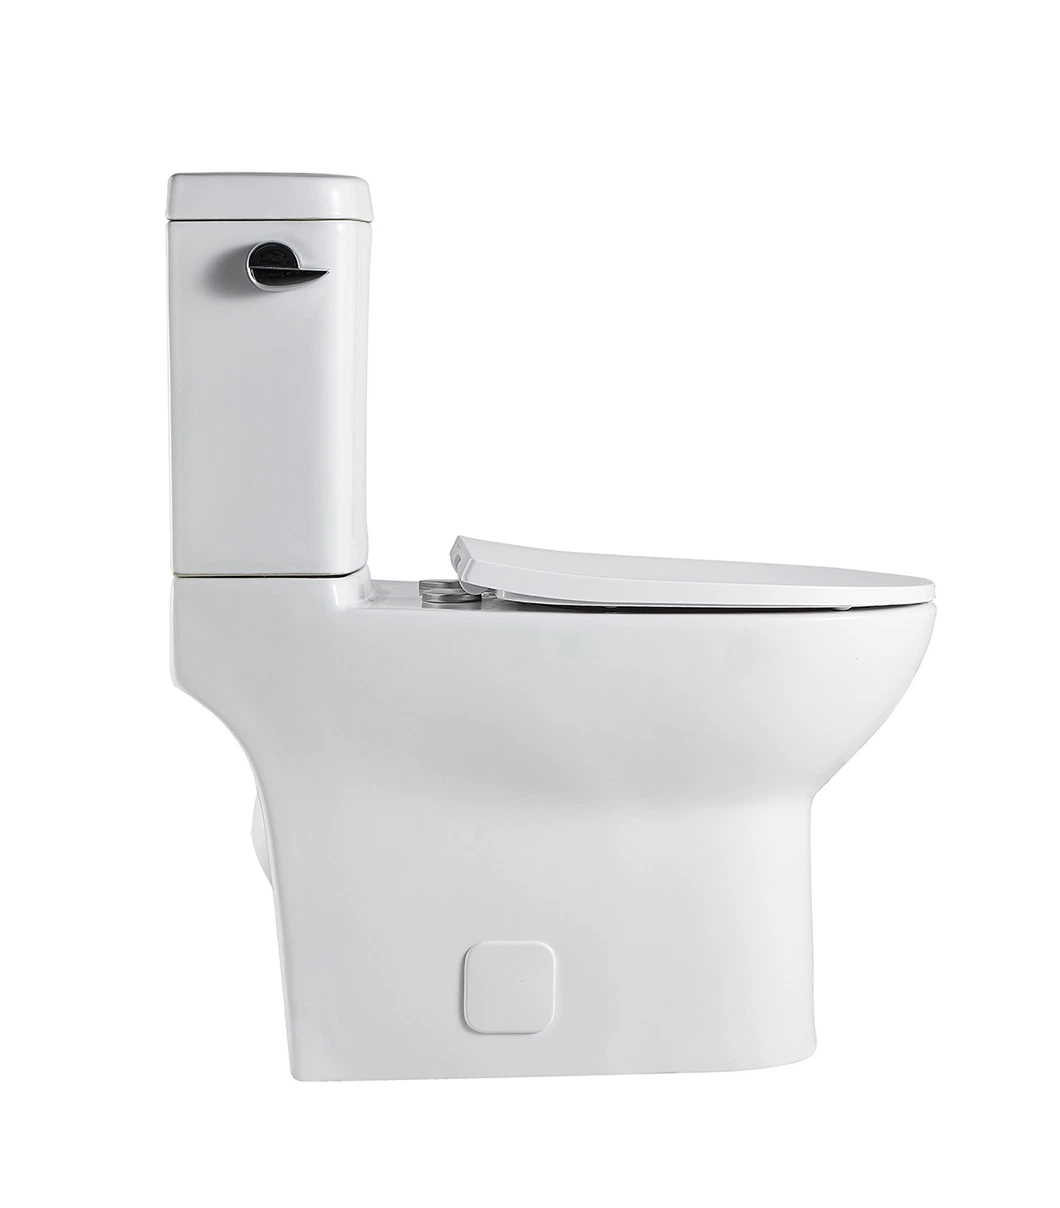 Seite Flush Keramik Wc Wasser Schrank Badezimmer Dual Flush Wc. Schüssel Sanitärware Großhandel